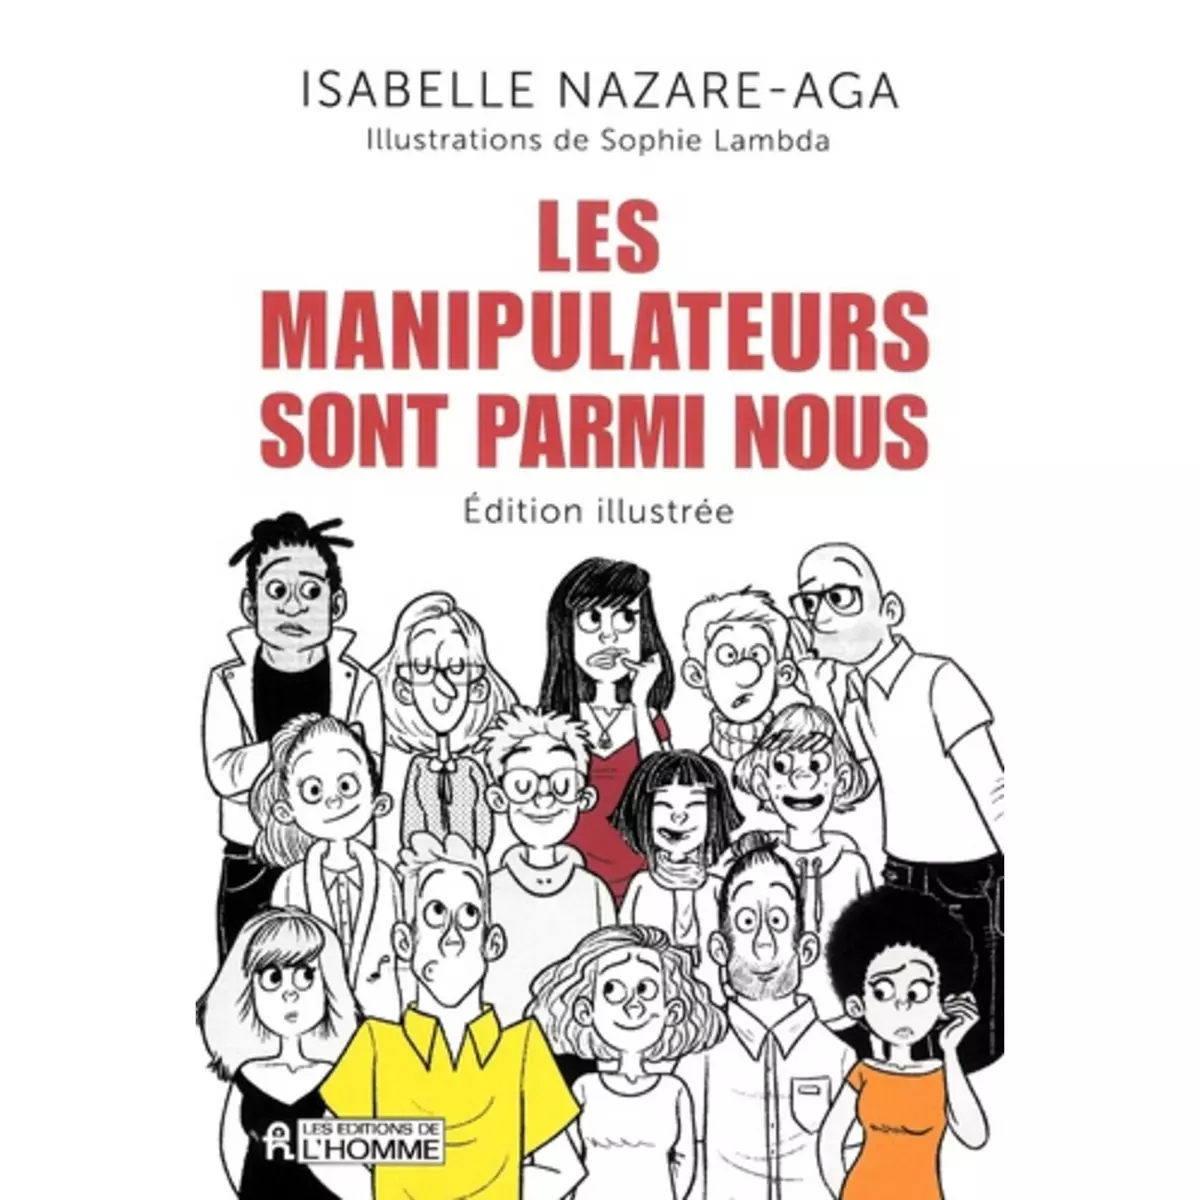  LES MANIPULATEURS SONT PARMI NOUS. EDITION ILLUSTREE, Nazare-Aga Isabelle